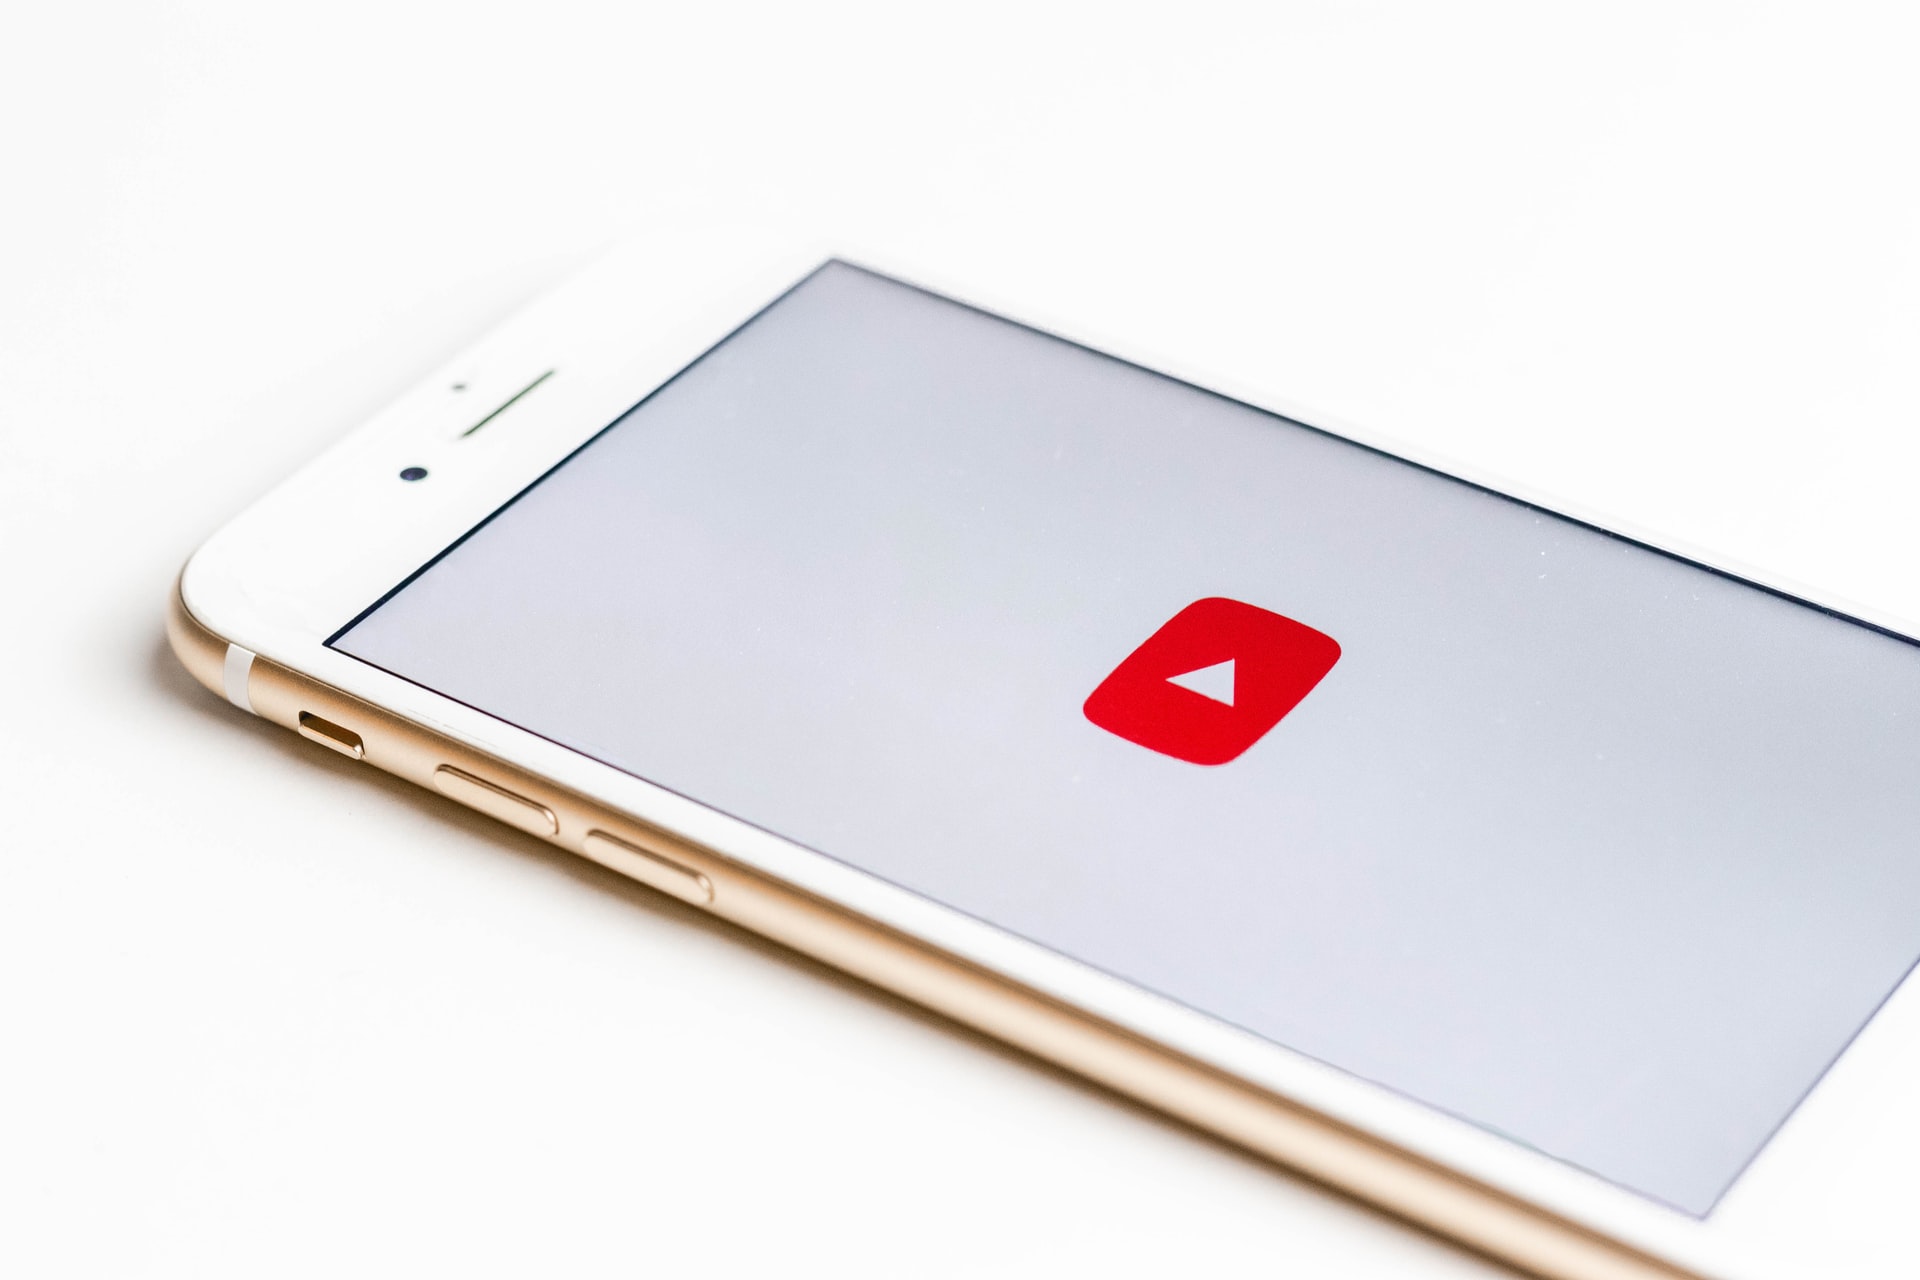 Crie vídeos no YouTube para ganhar dinheiro na internet.